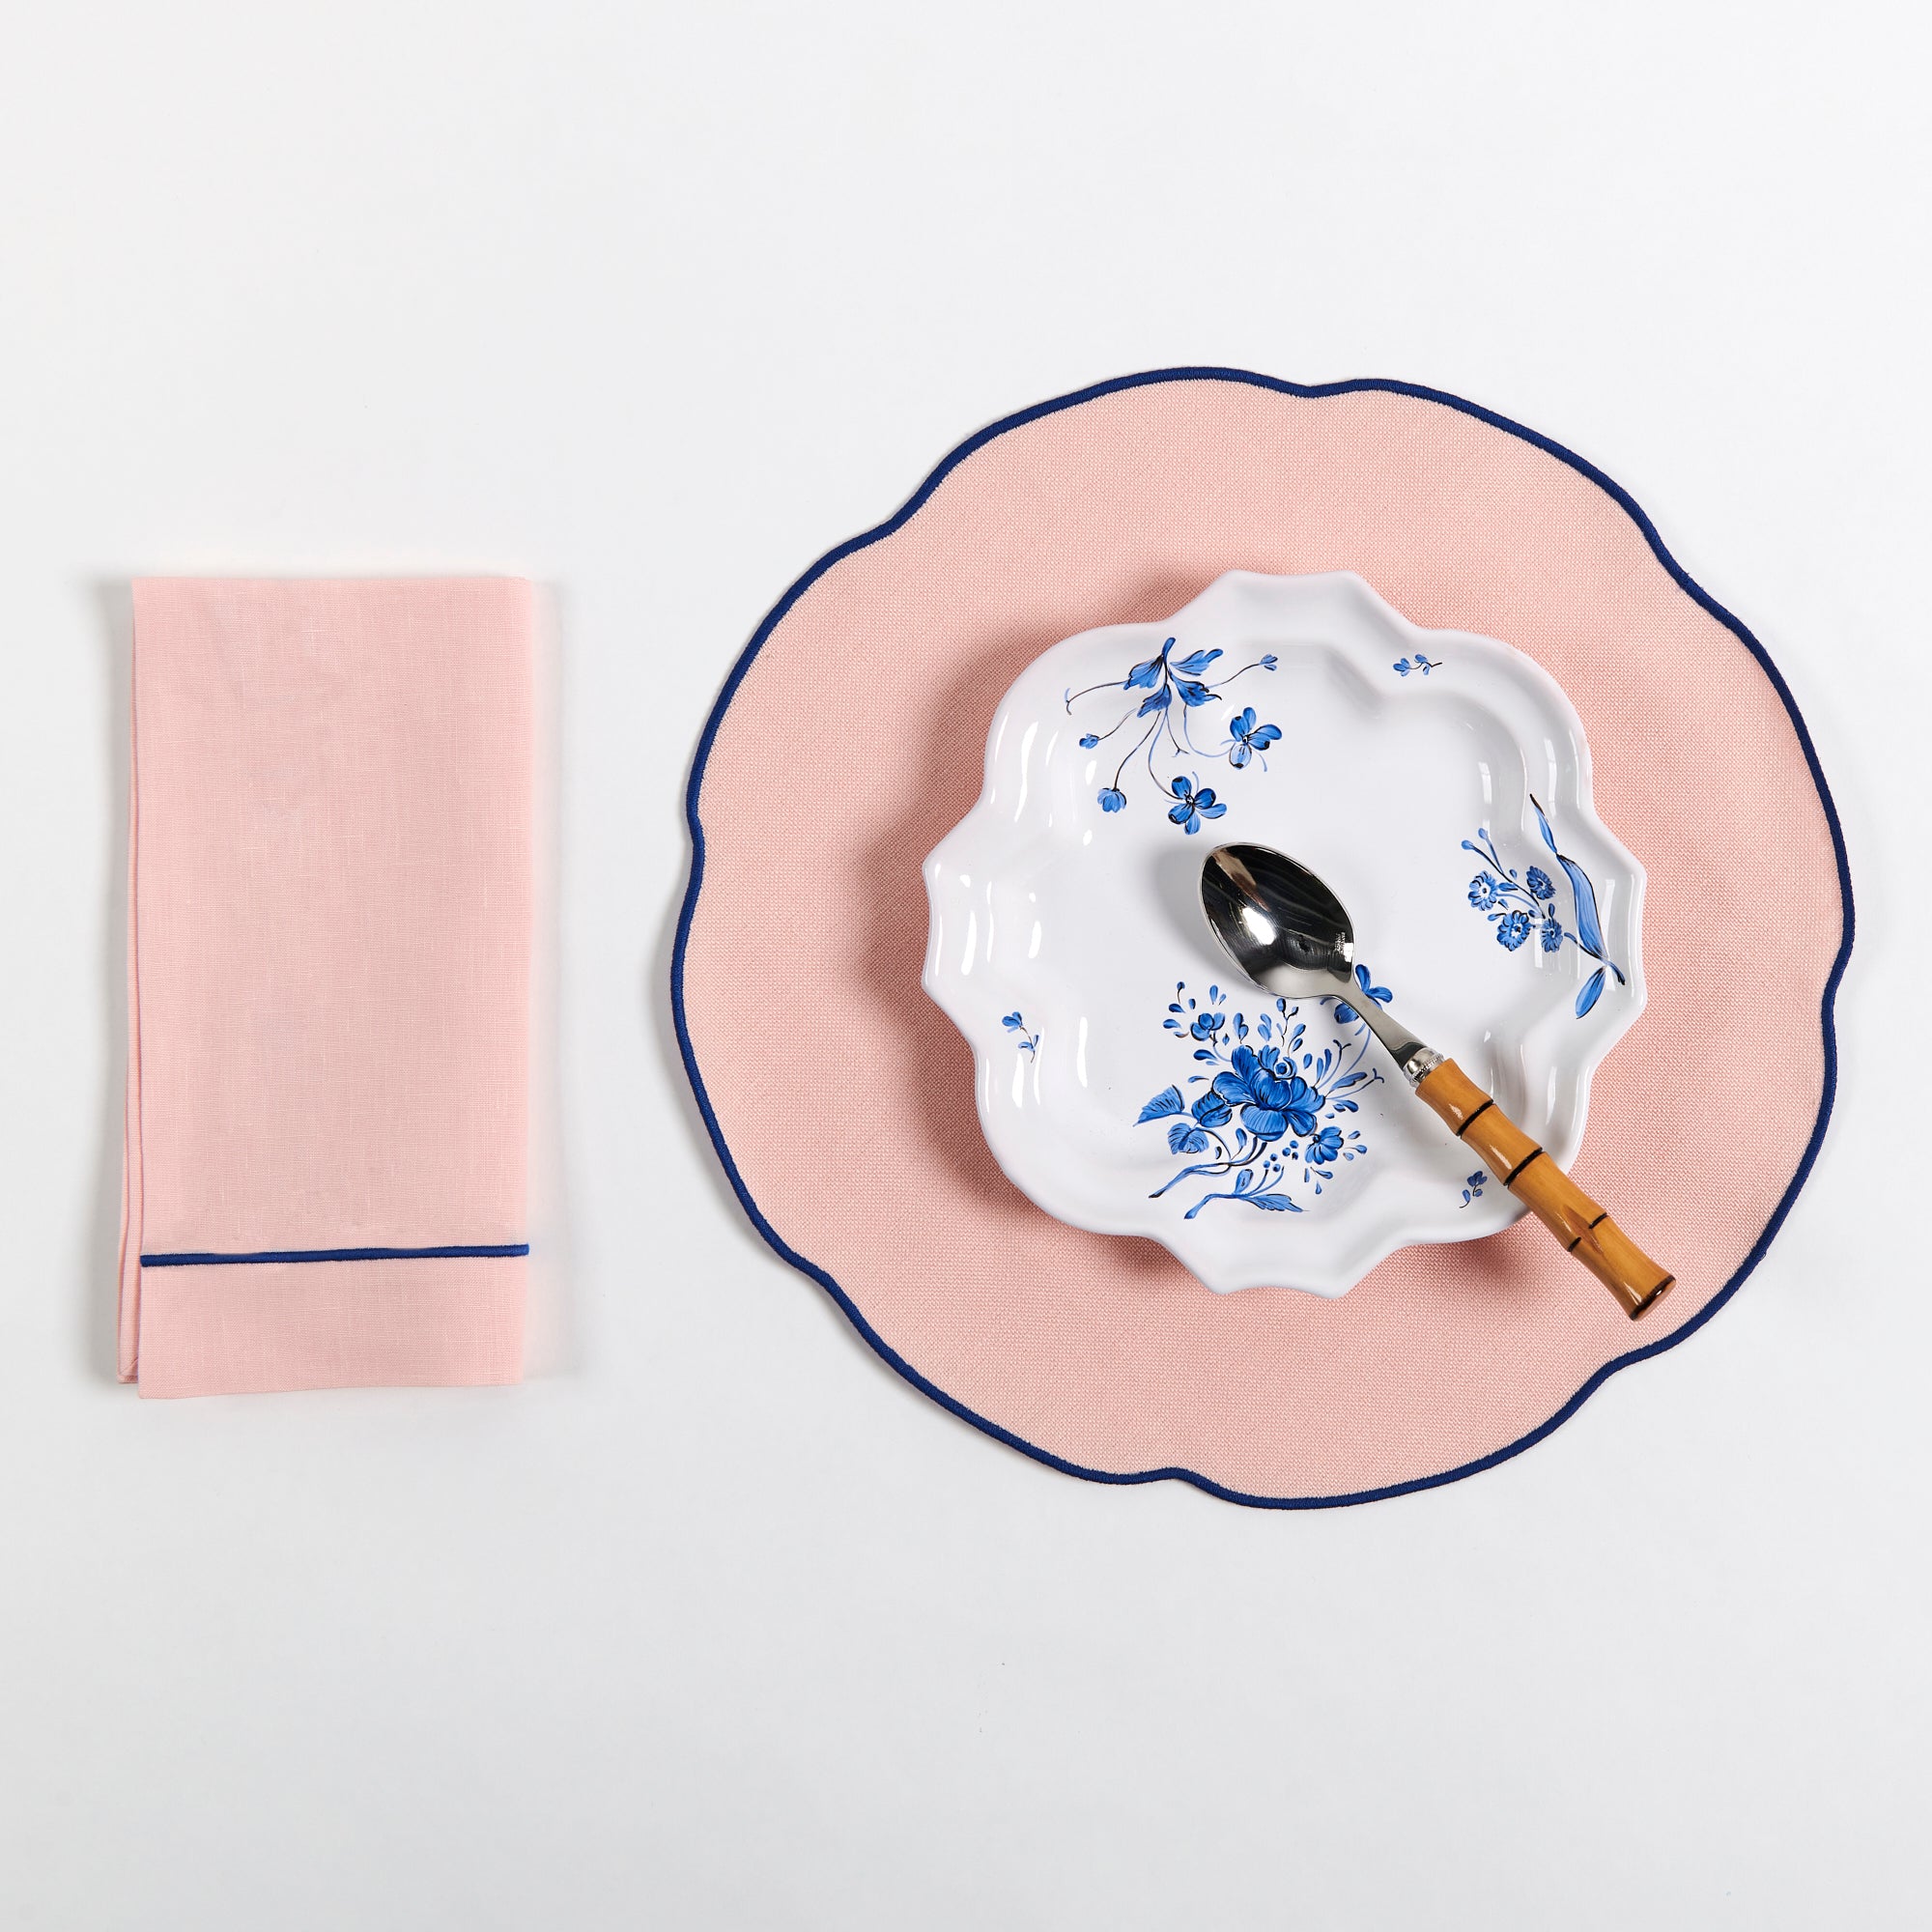 Coated Pink Linen Placemat, Blue with Napkin and Camaieu Drageoir